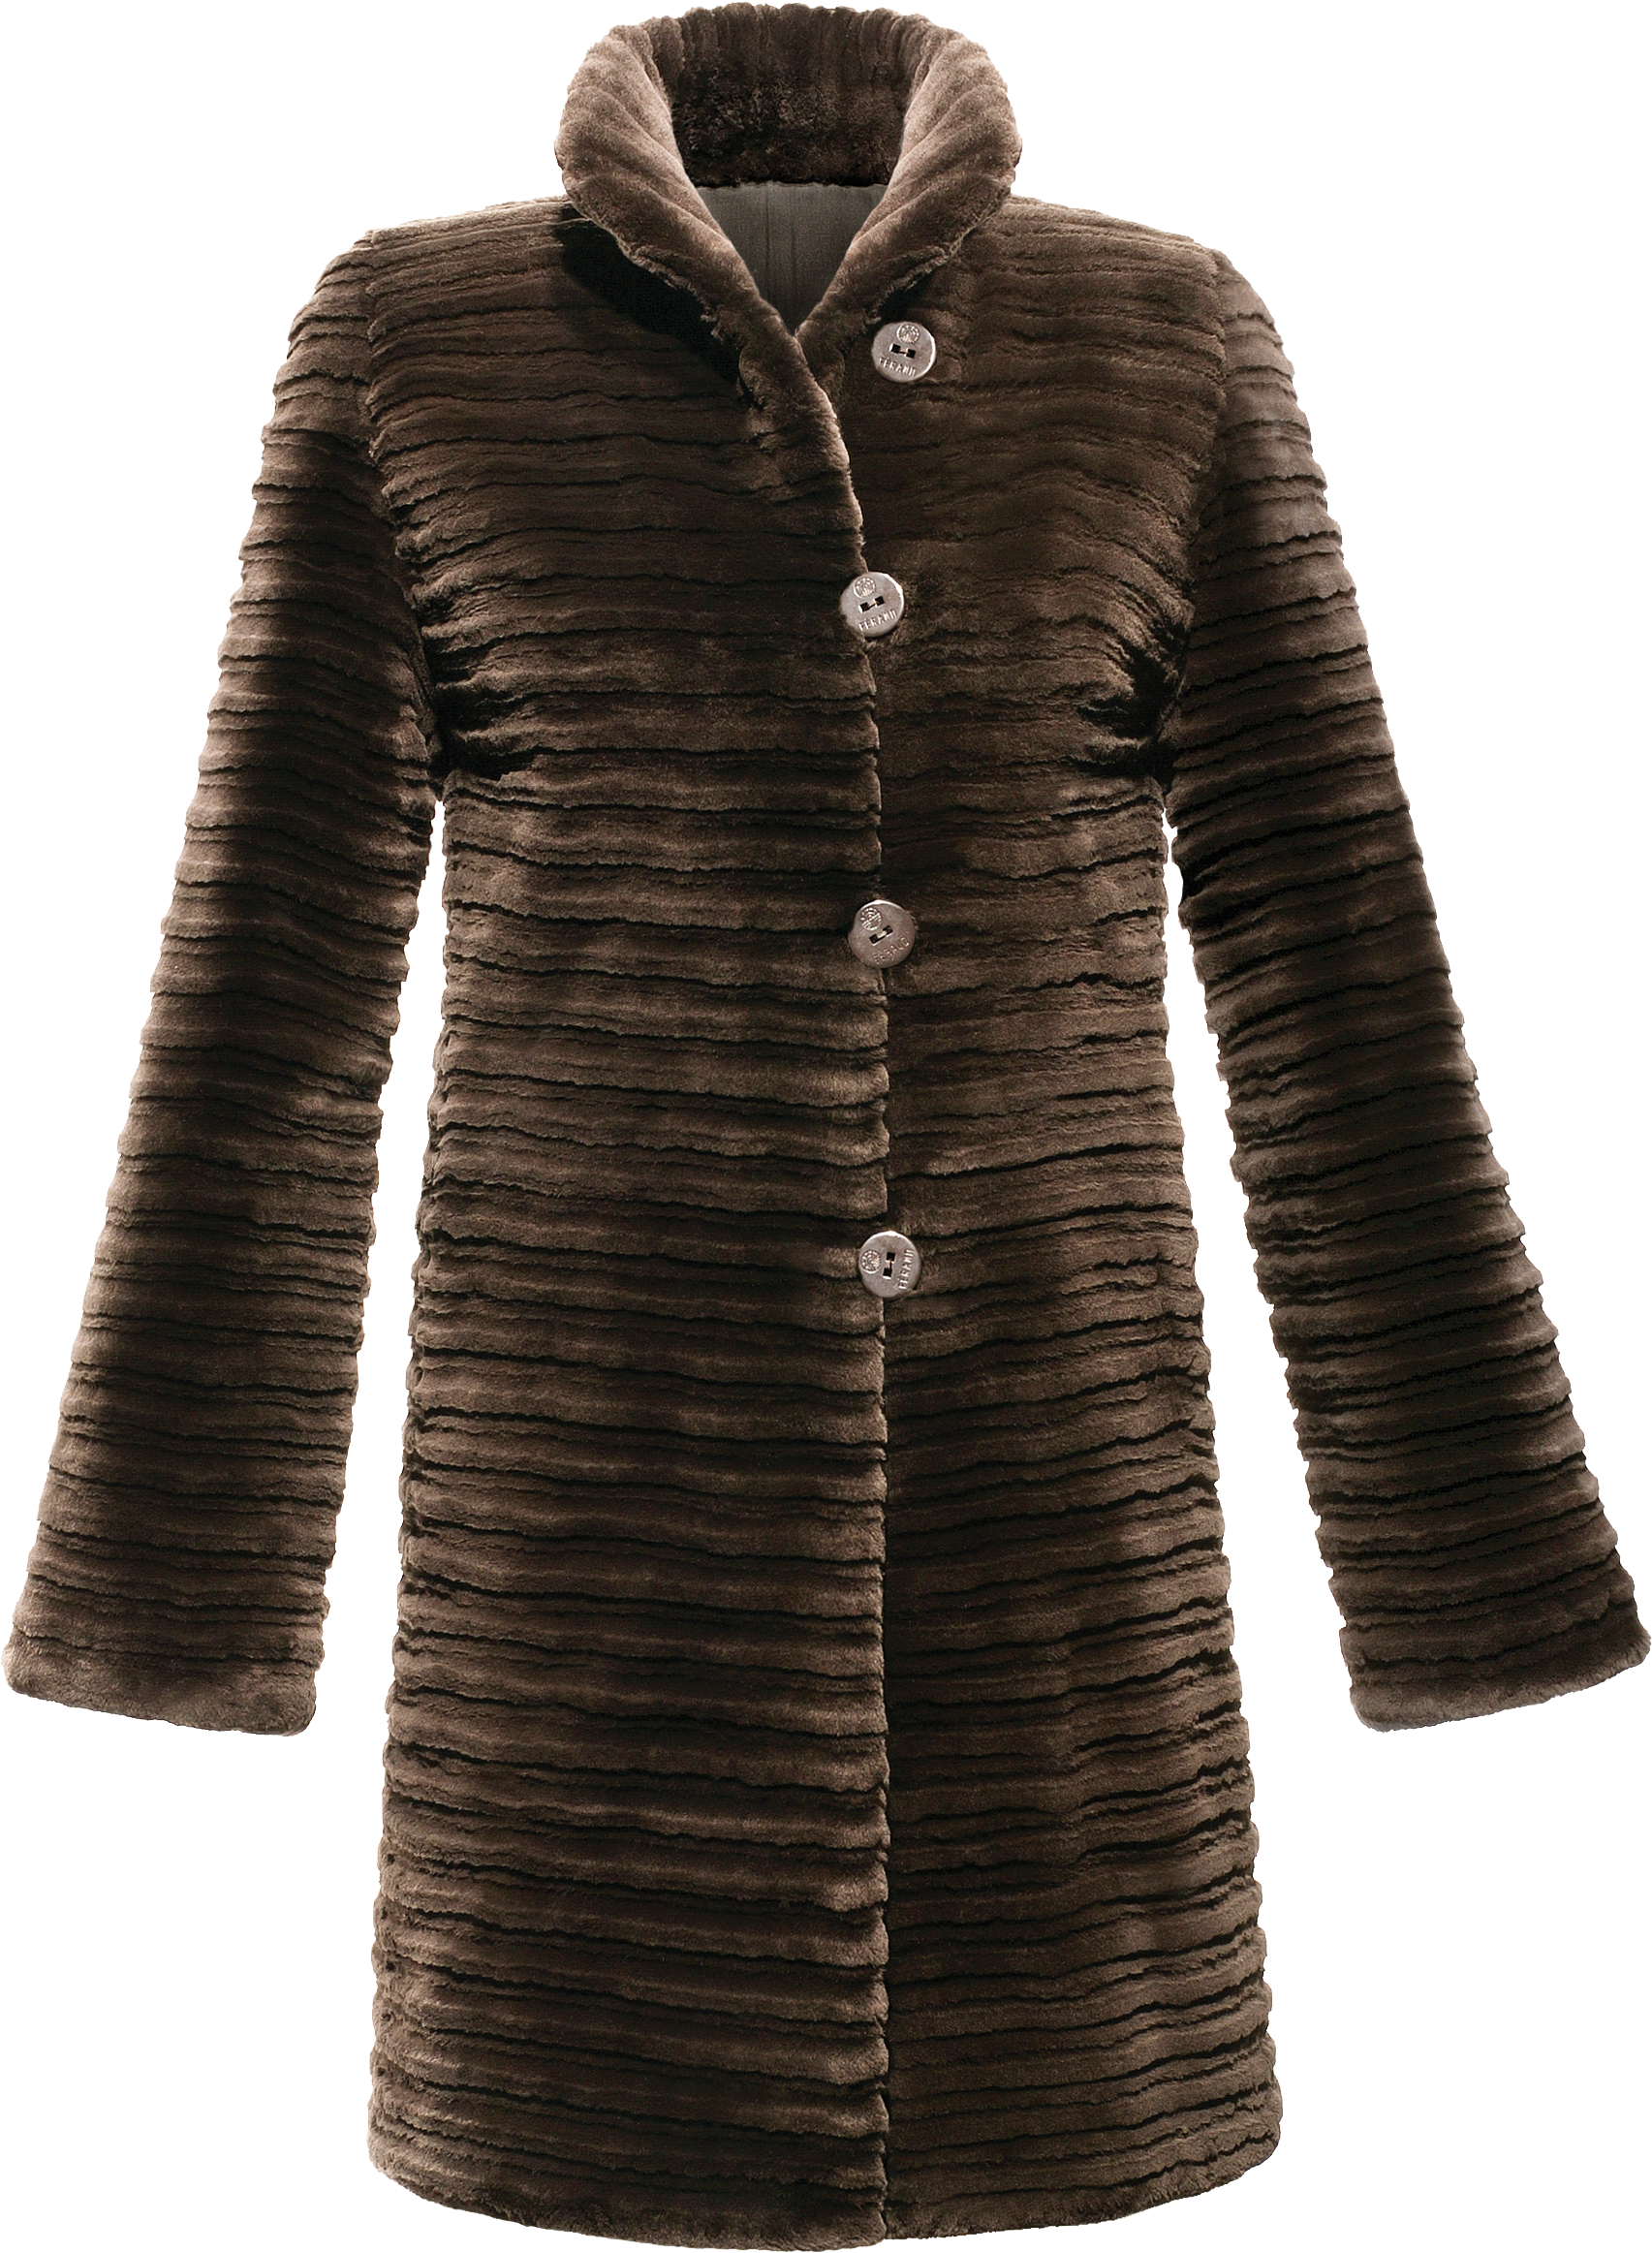 Fur Coat Women Clothing Shearling Coats PNG Image